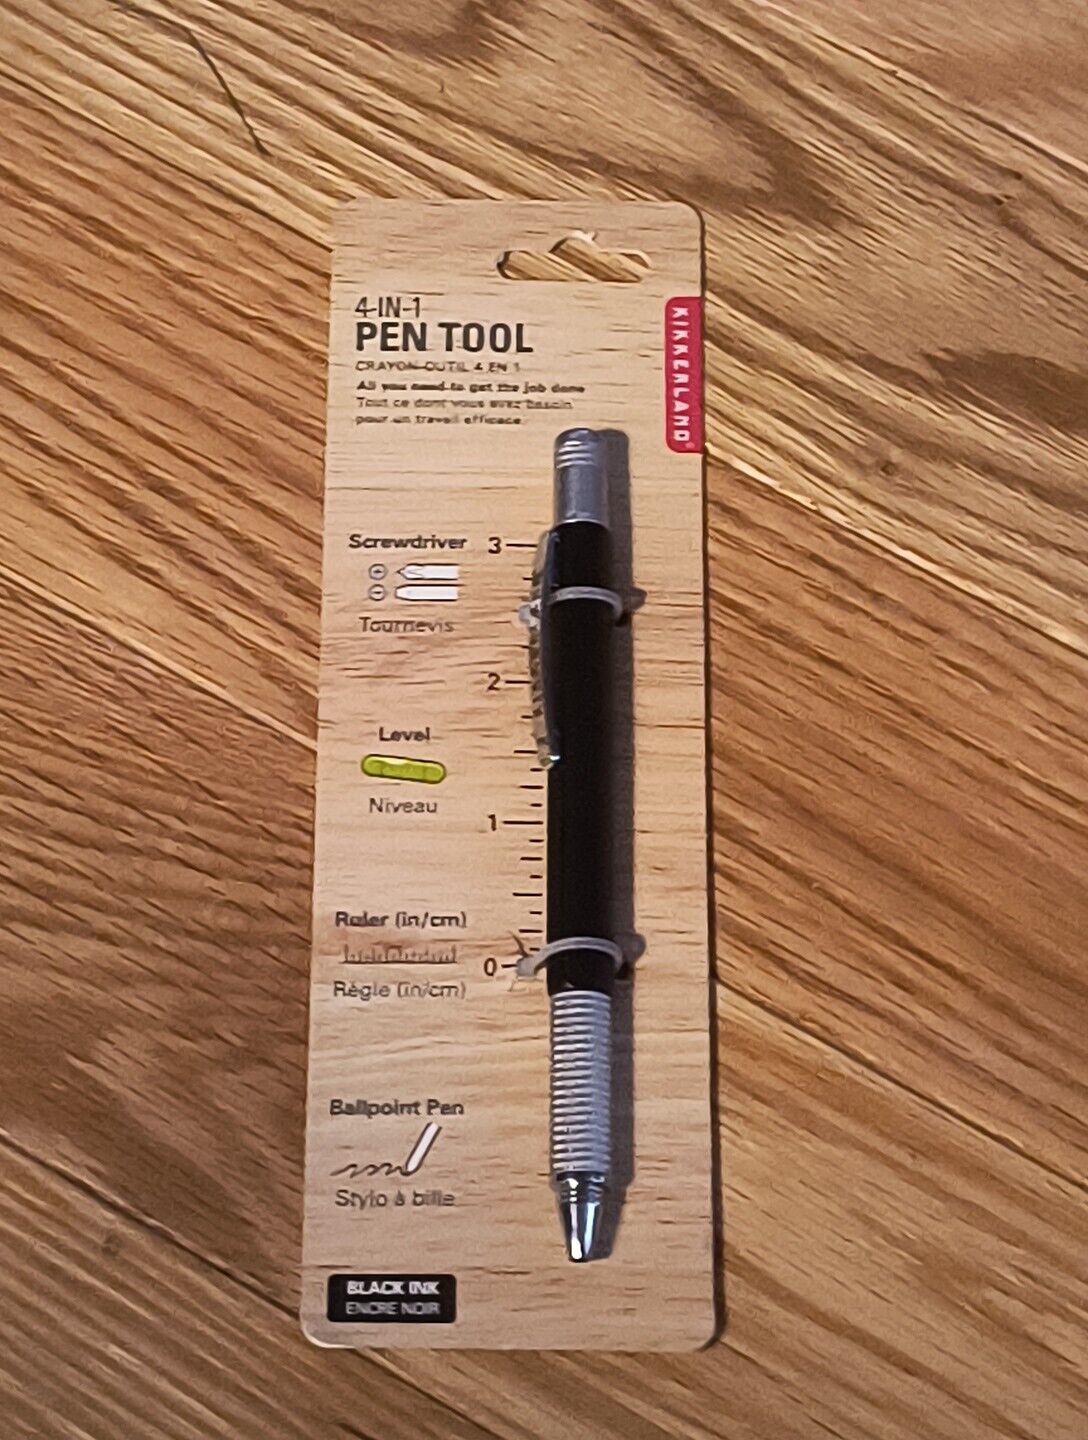 Kikkerland 4 In 1 Black Pen Tool Screwdriver Level Ruler Pen New